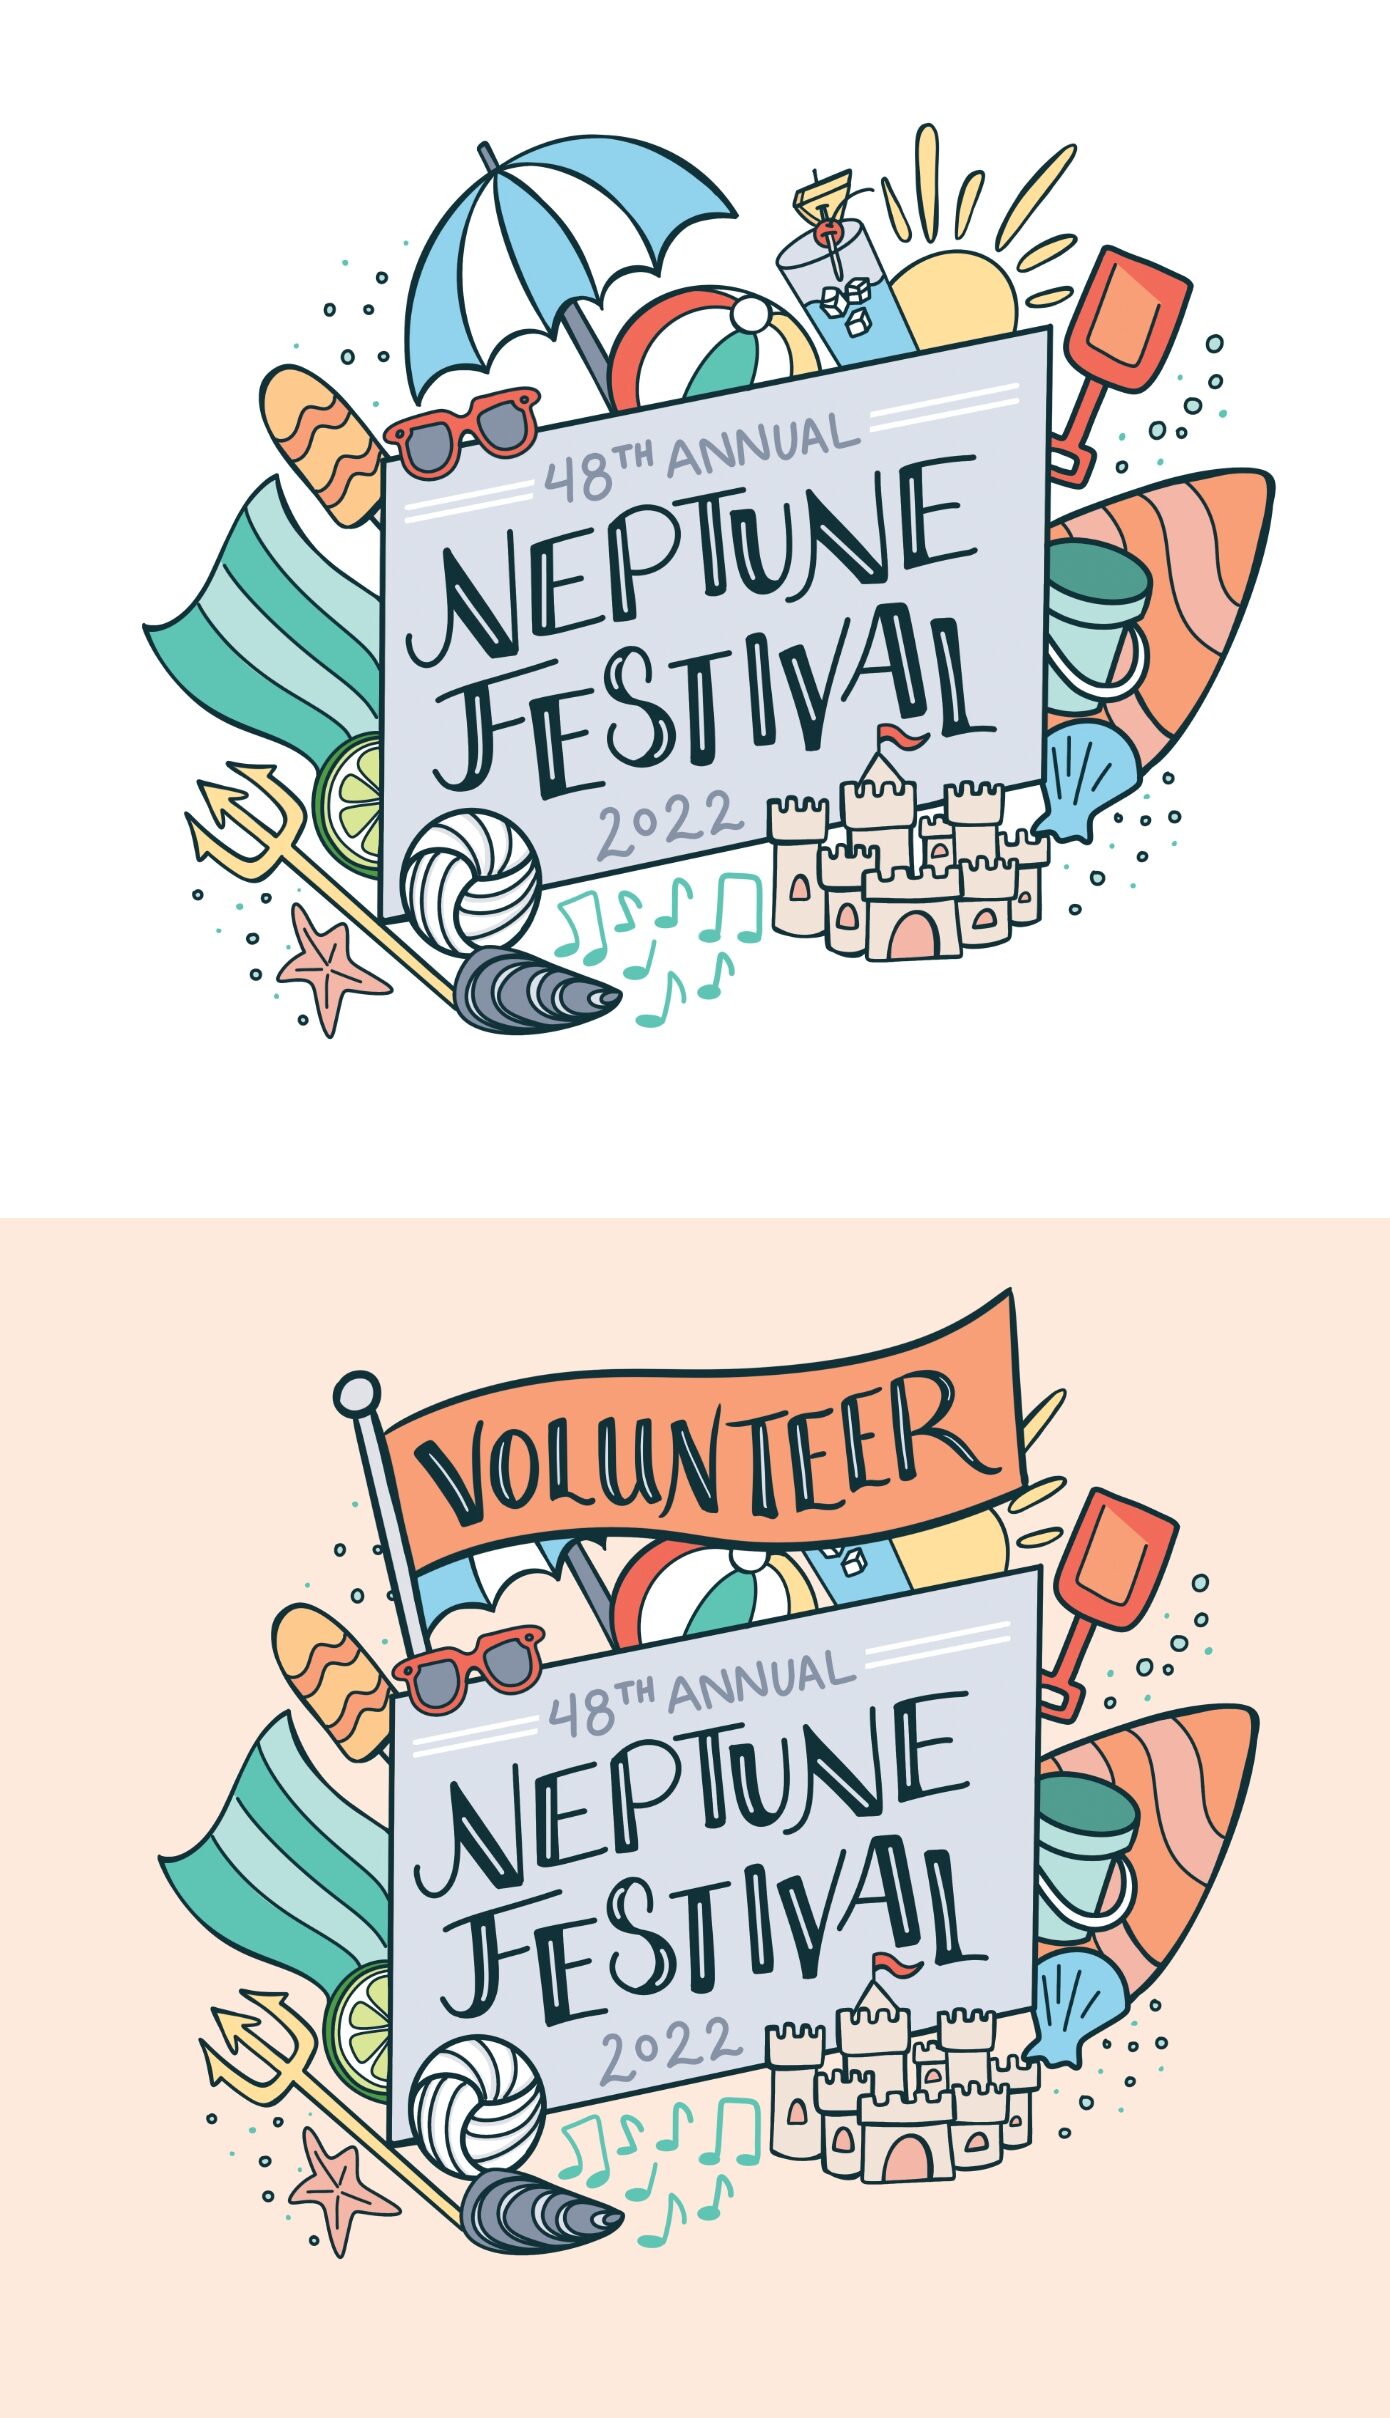 Neptune Festival Boardwalk Festival Artwork